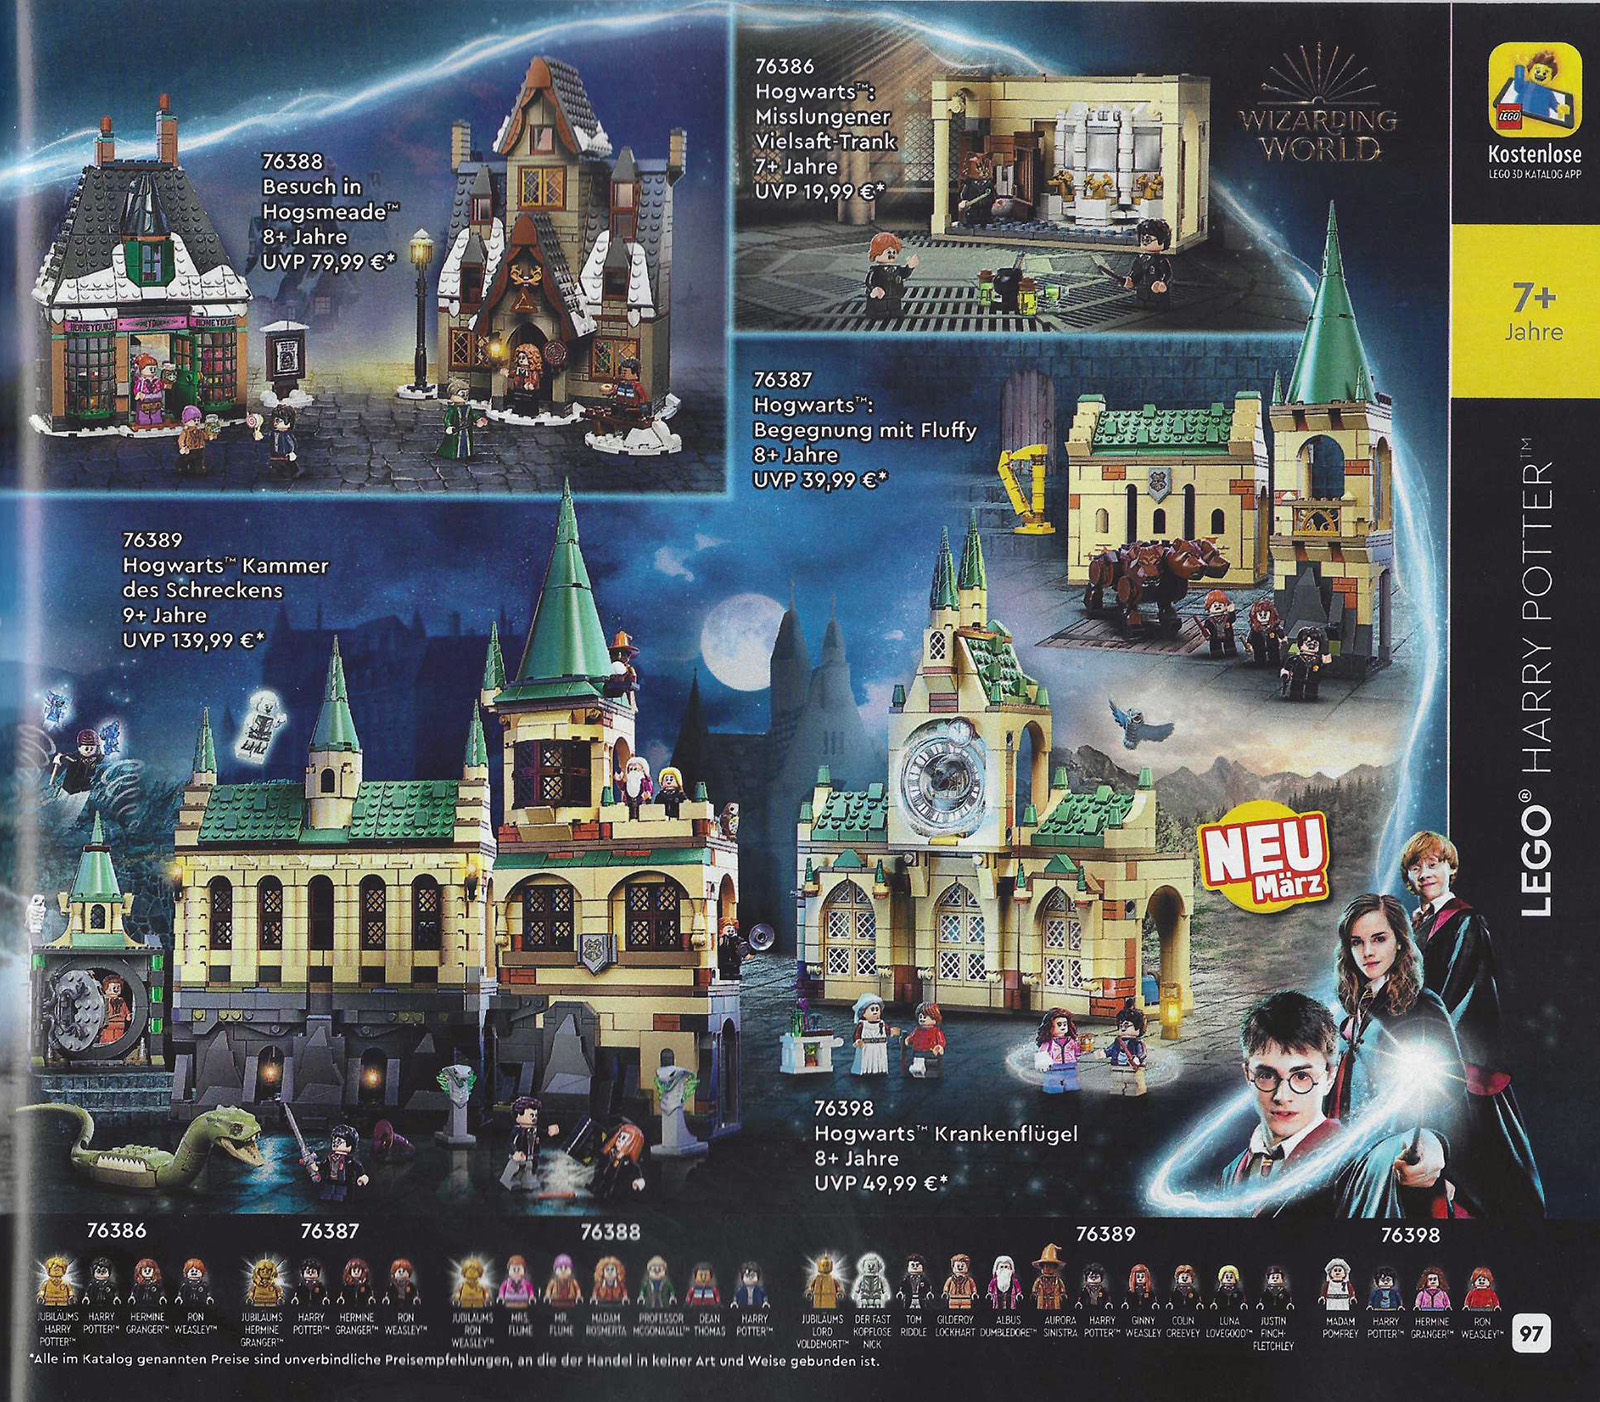 ▻ Nouveautés LEGO Harry Potter 2021 : les quatre livres Hogwarts Moment  sont en ligne - HOTH BRICKS